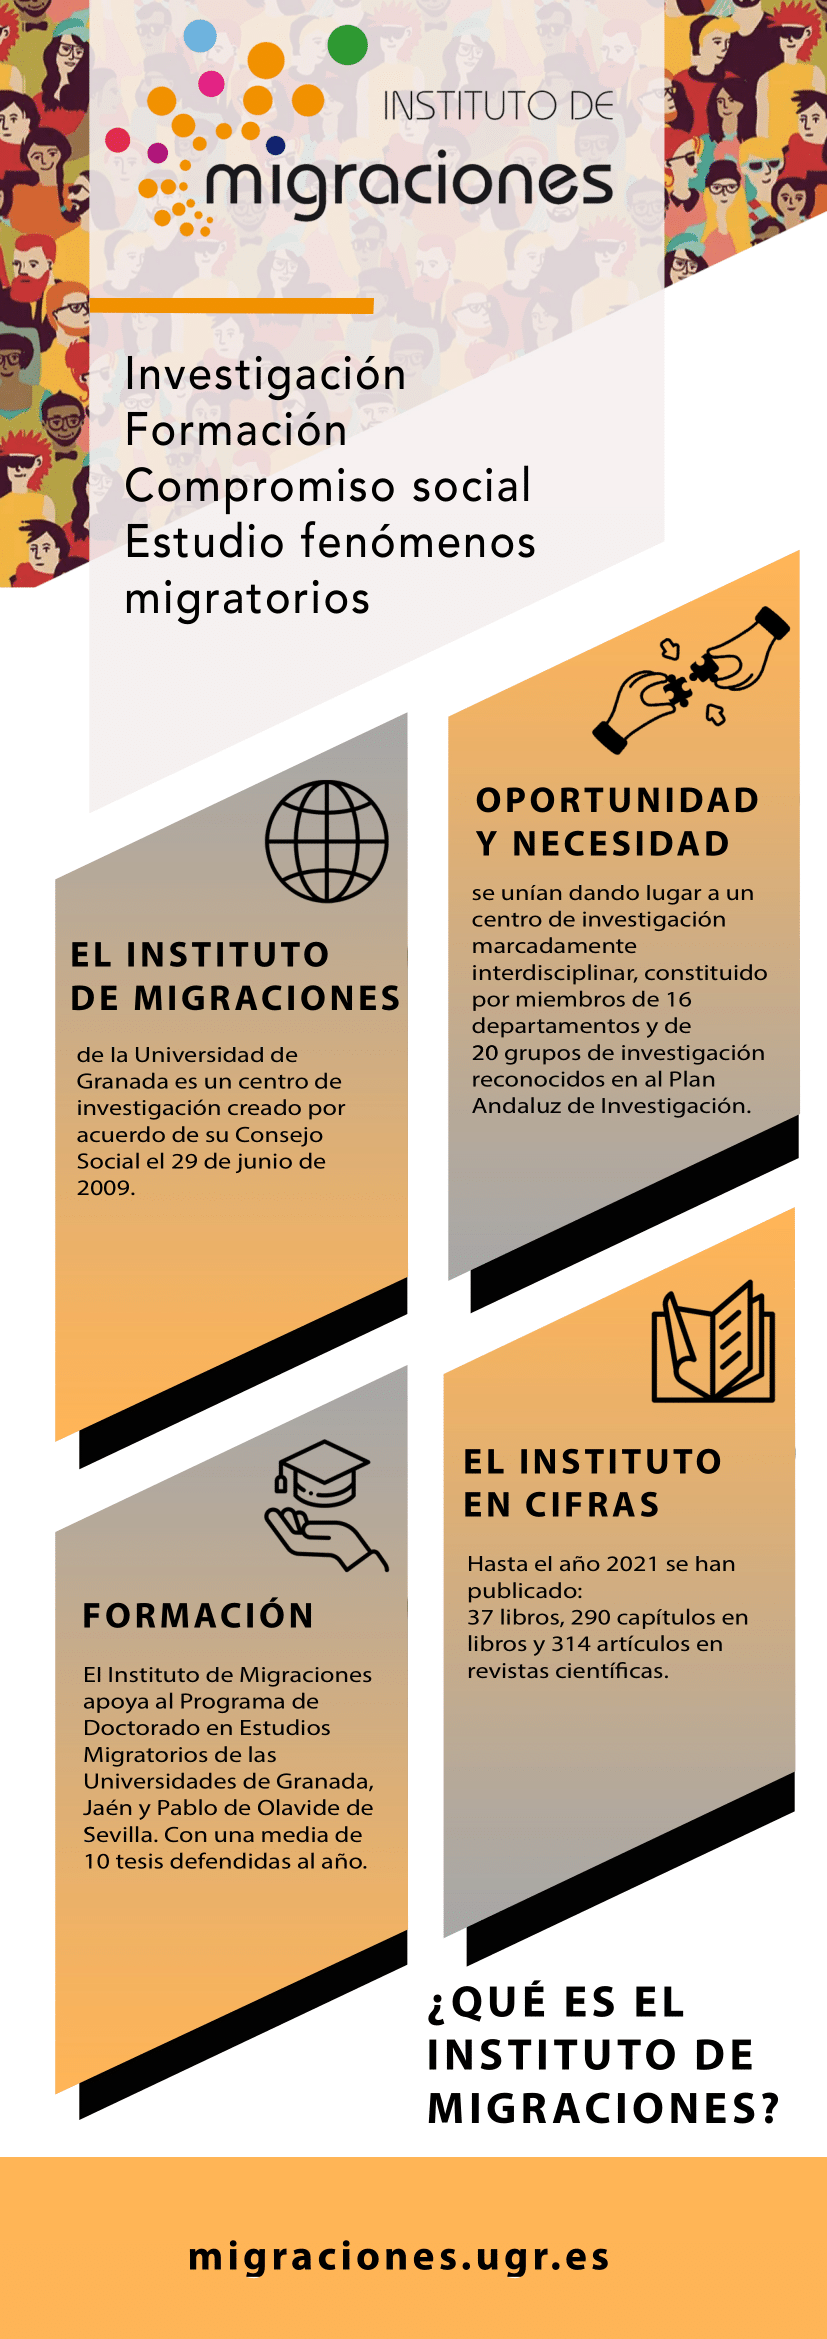 Instituto de Migraciones